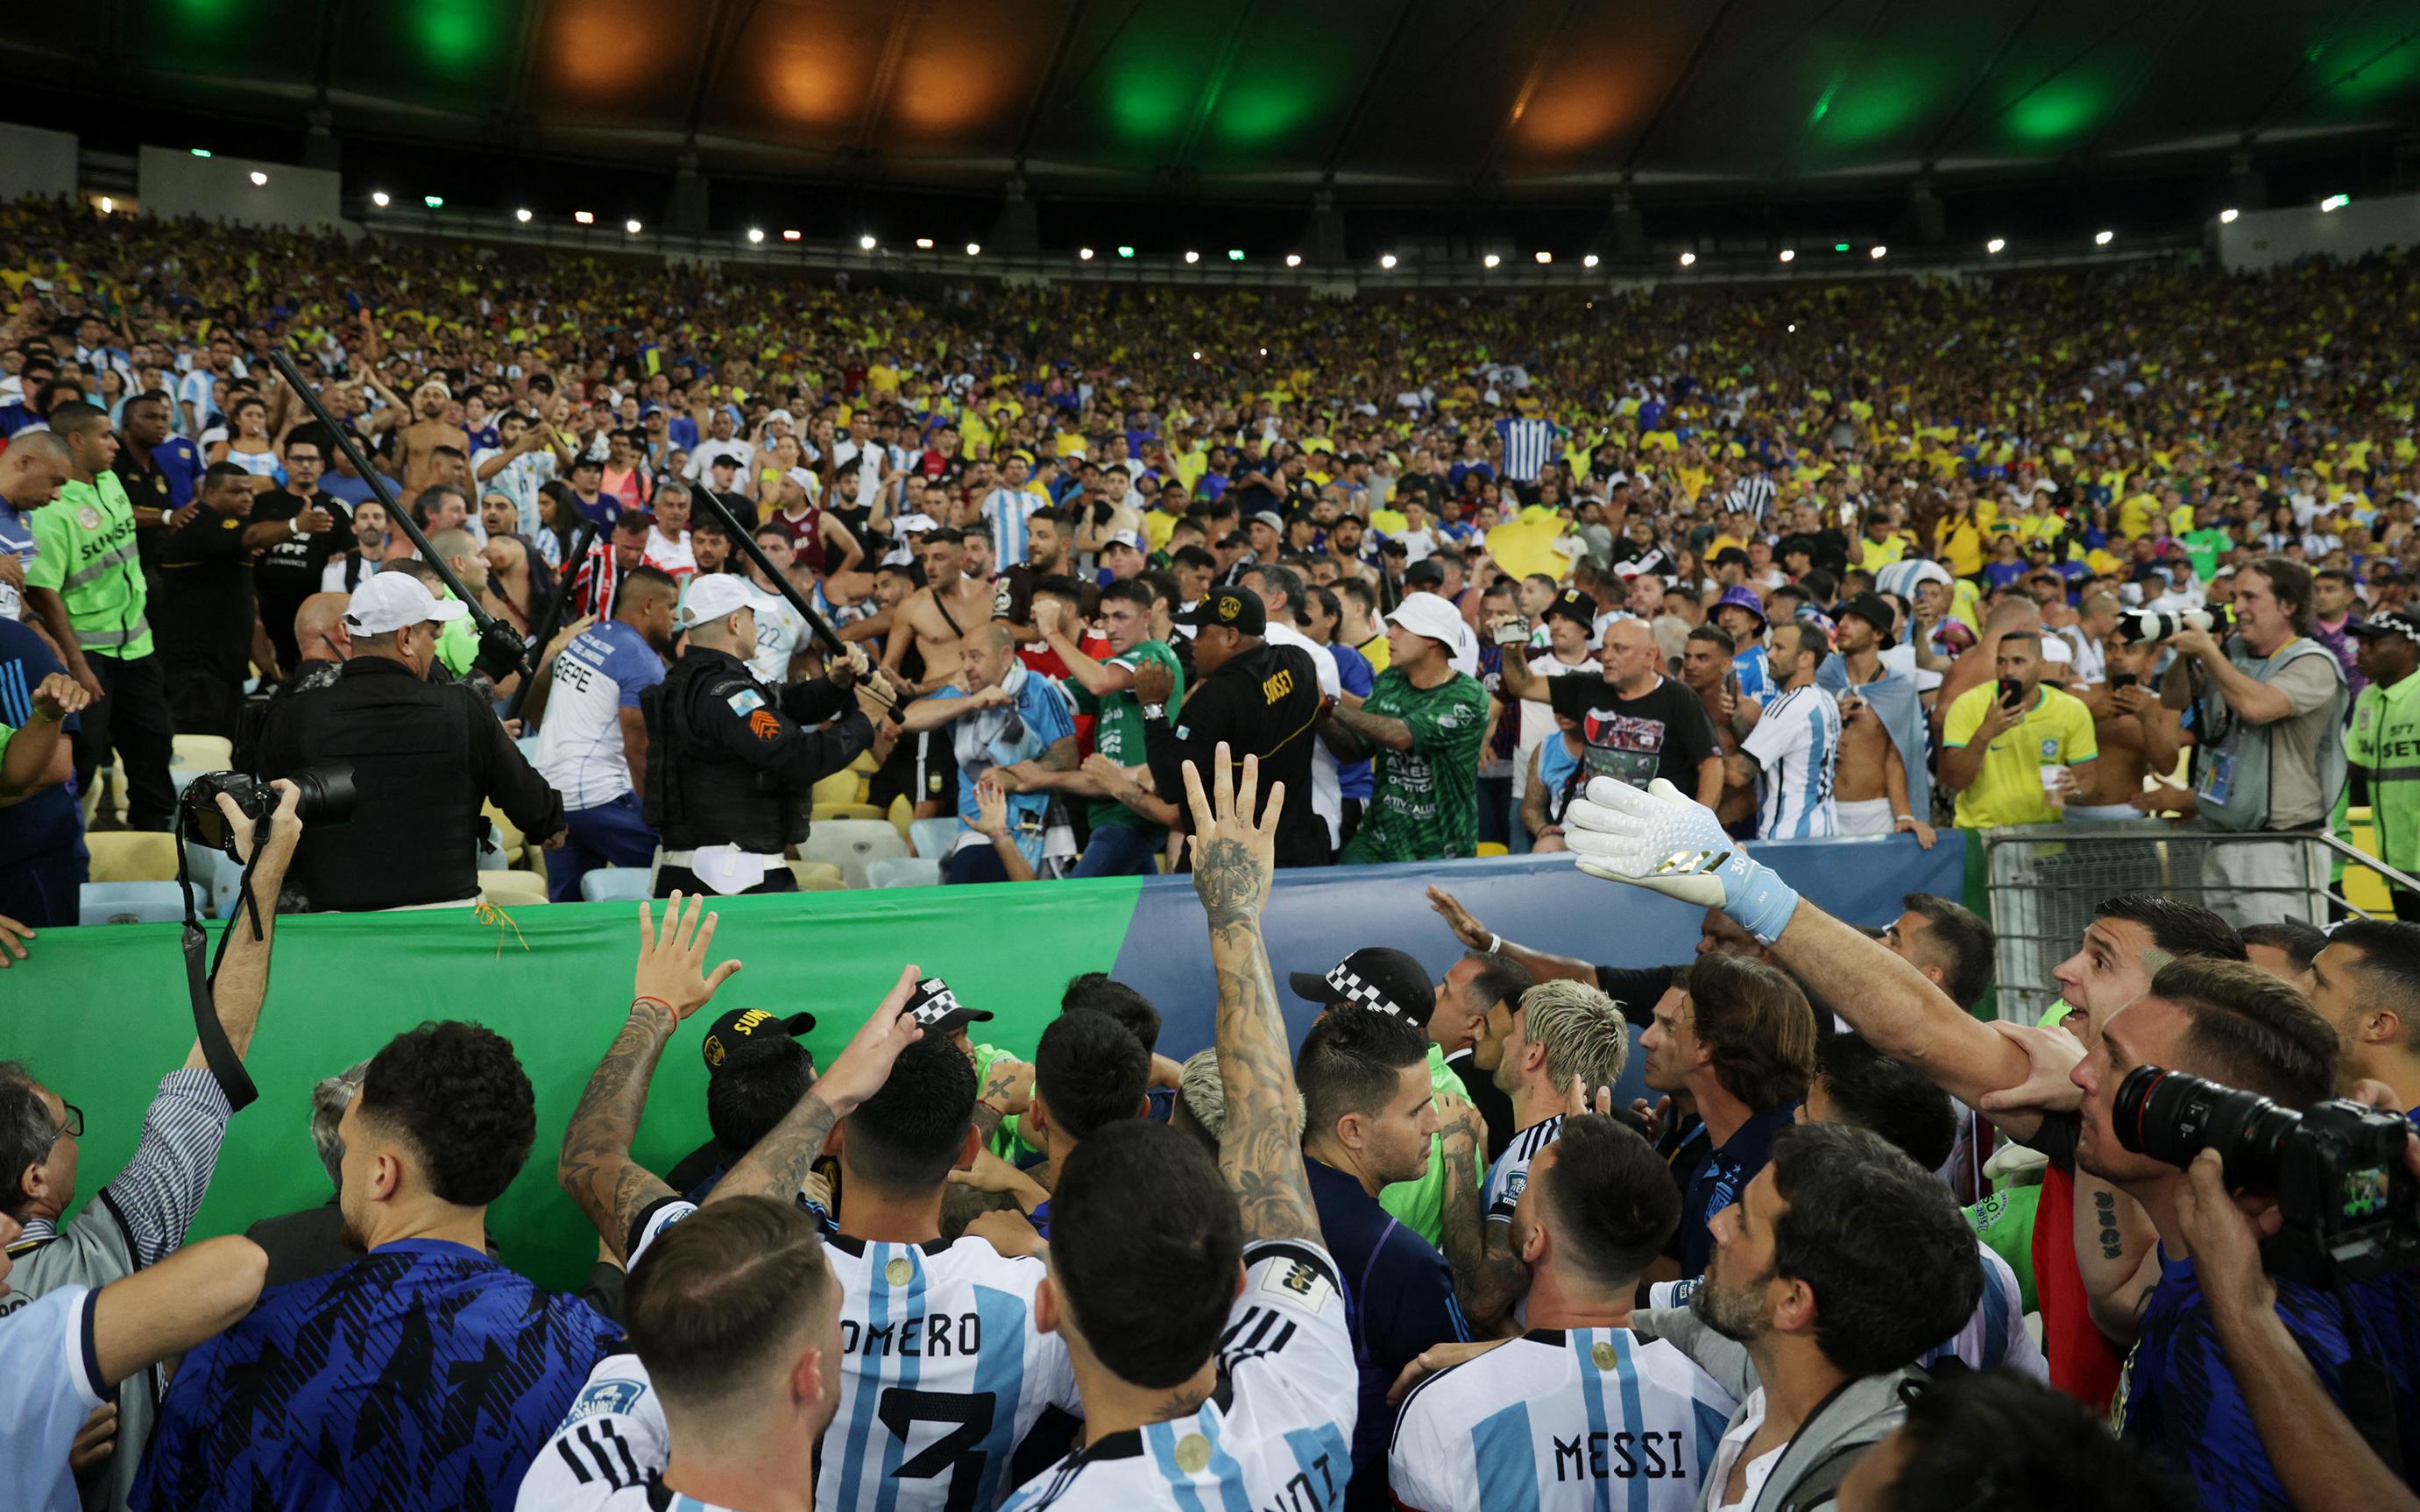 Массовая драка полиции и фанатов произошла на матче Бразилии и Аргентины